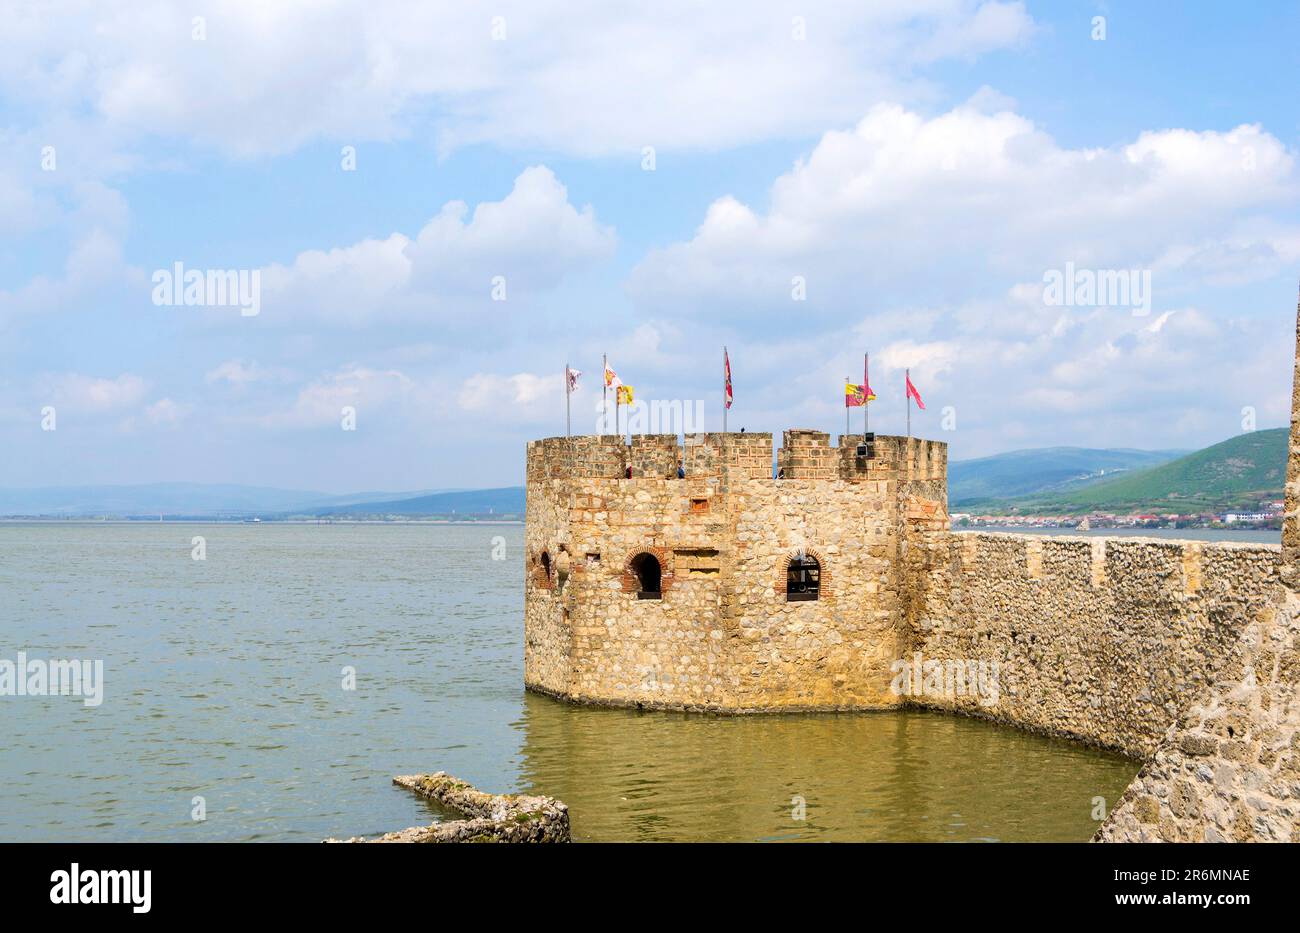 Fortezza di Golubac - veduta accattivante di una roccaforte medievale sul Danubio, circondata da paesaggi mozzafiato. Esplora la sua ricca storia Foto Stock